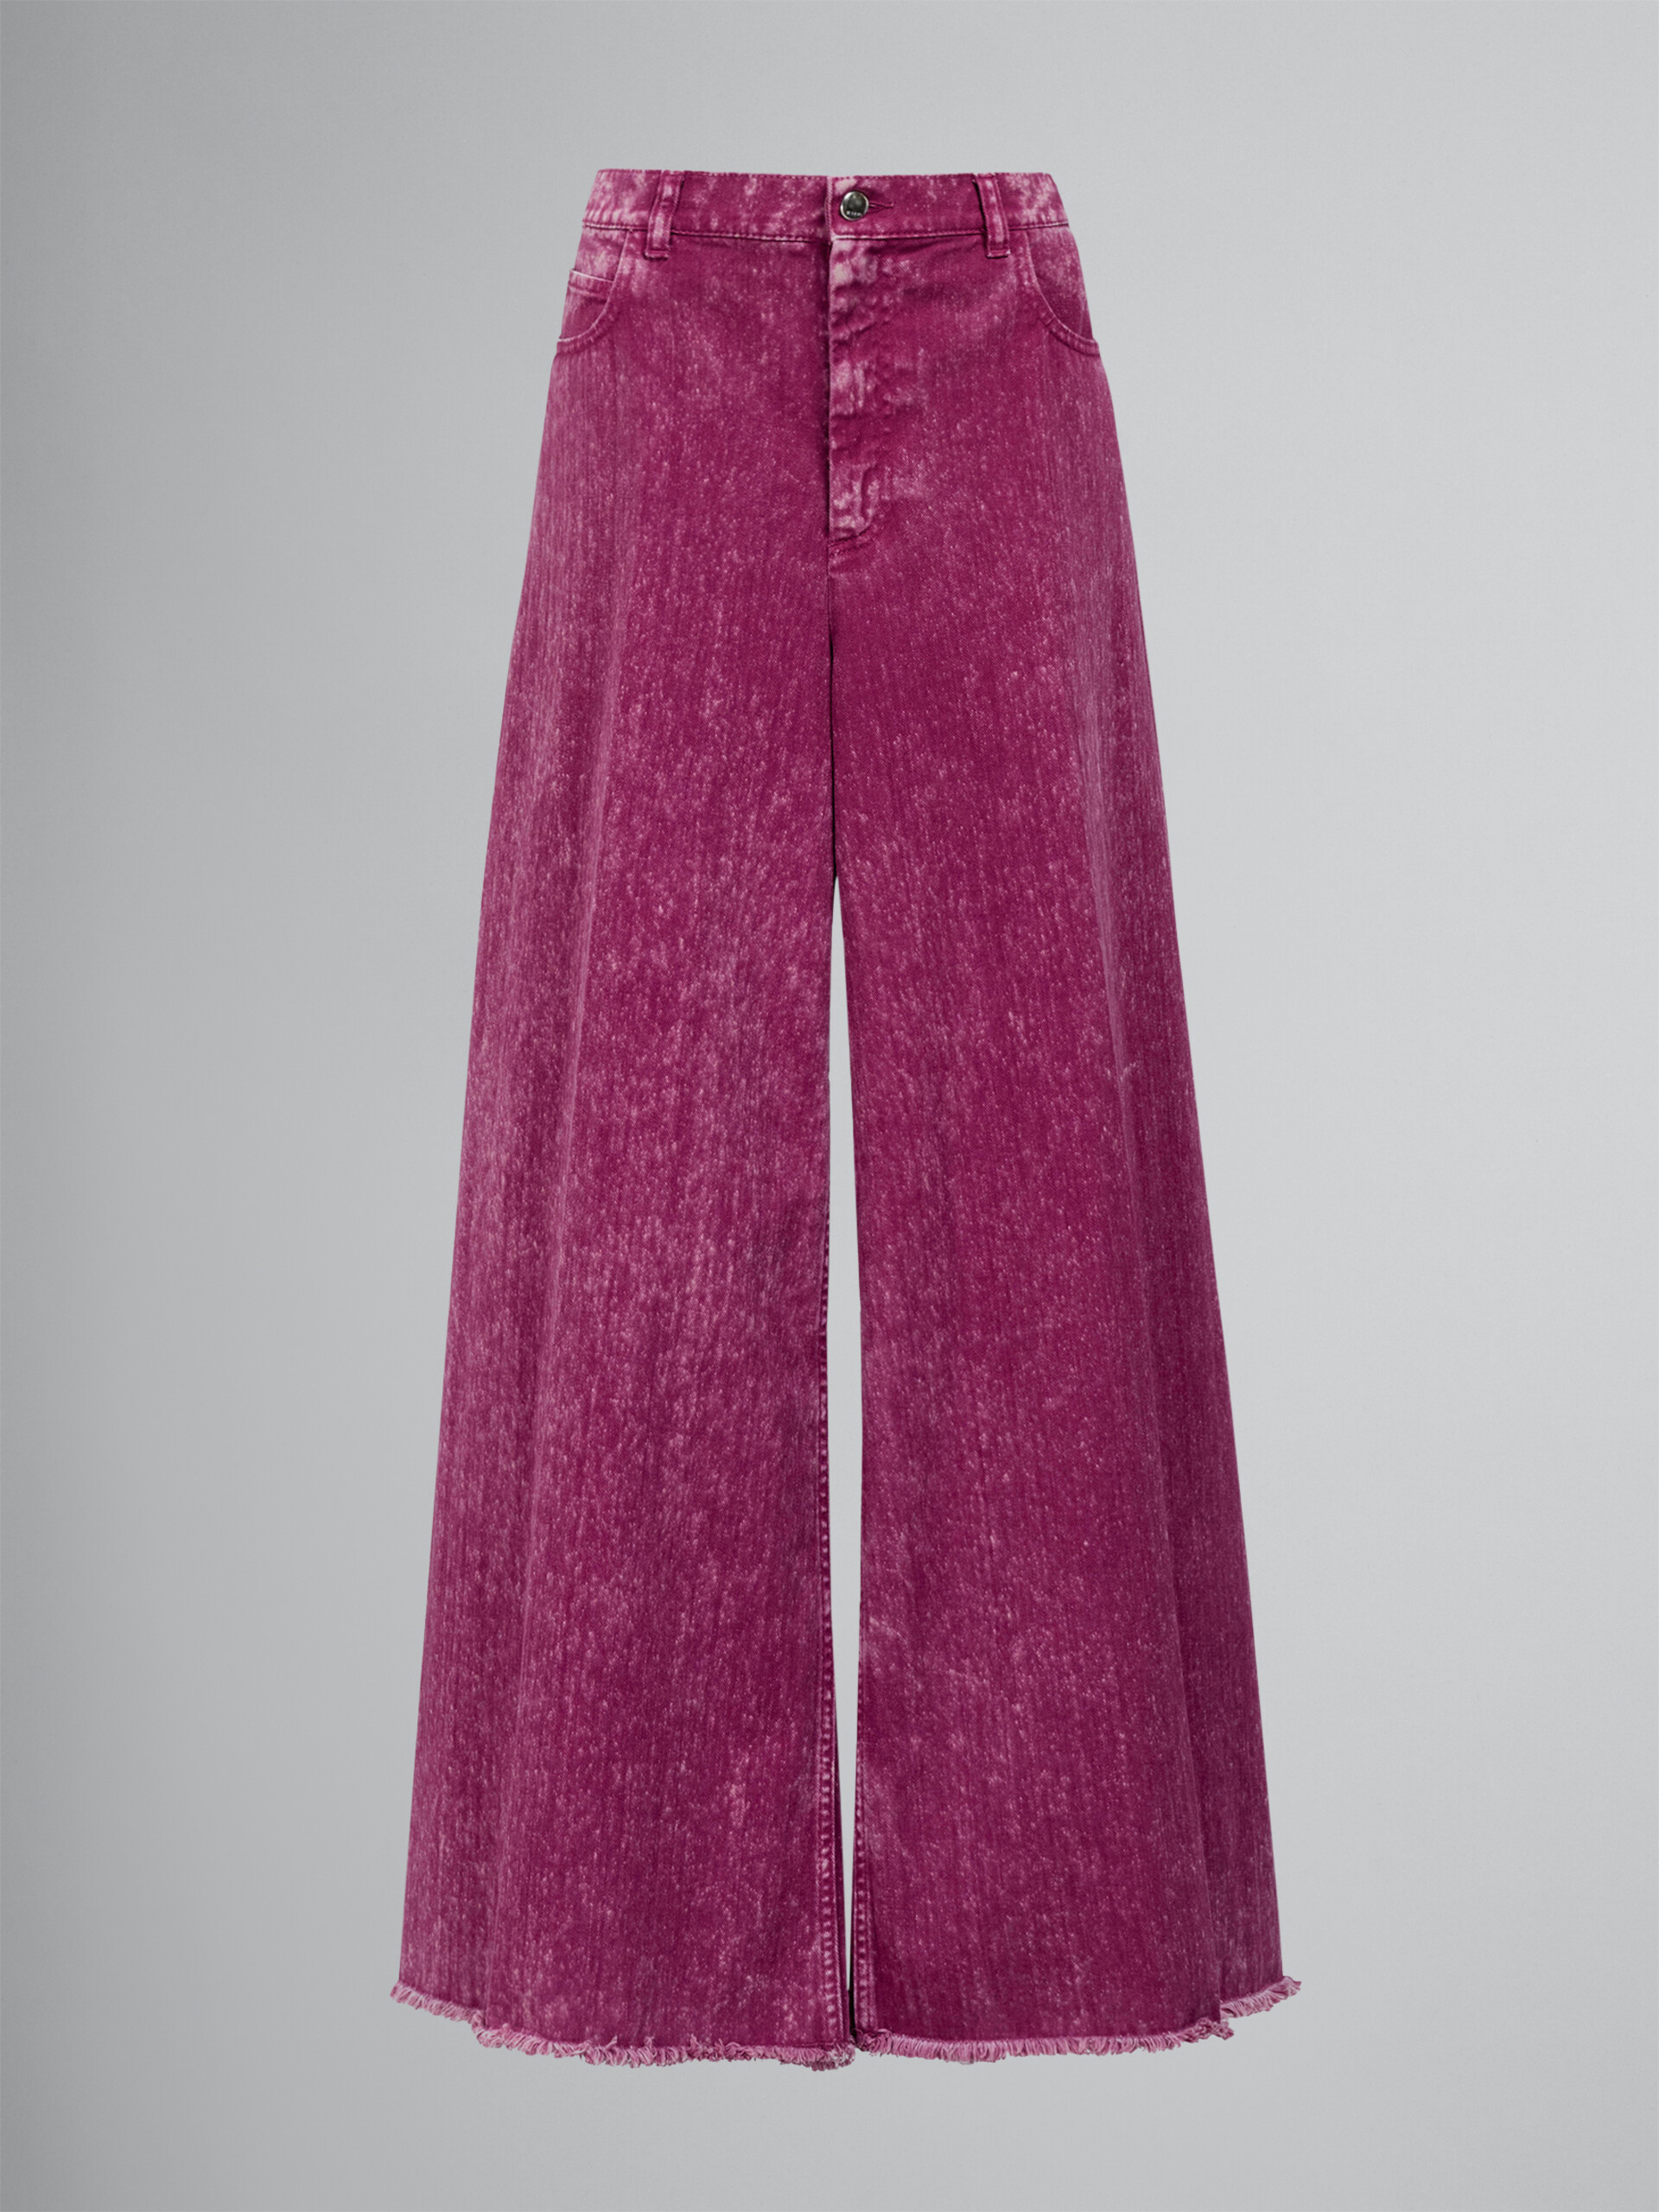 핑크 데님 와이드 트라우저 - Pants - Image 1